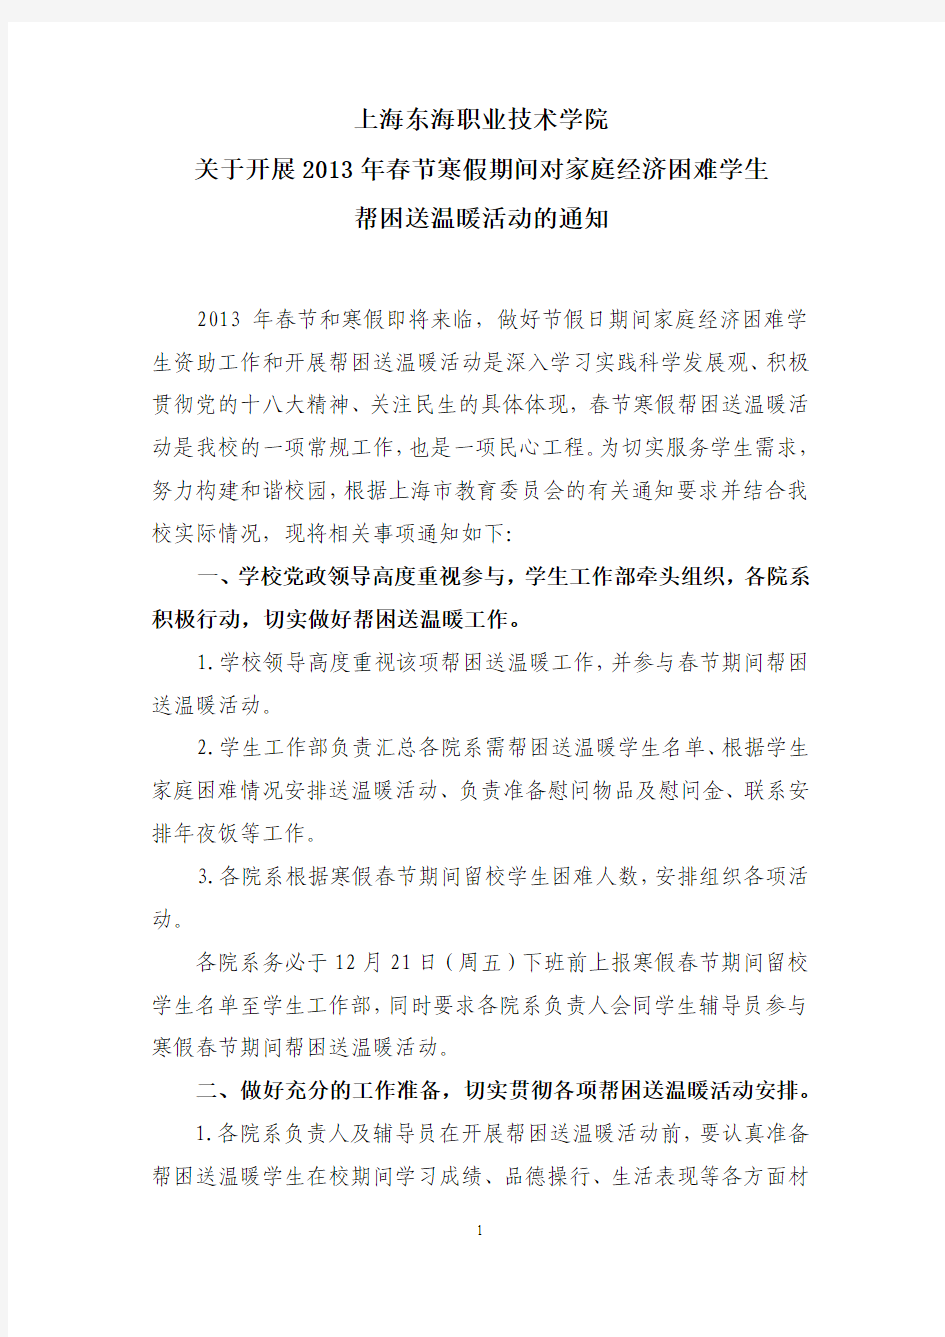 上海东海职业技术学院关于2013年春节寒假期间对困难学生送温暖活动的通知